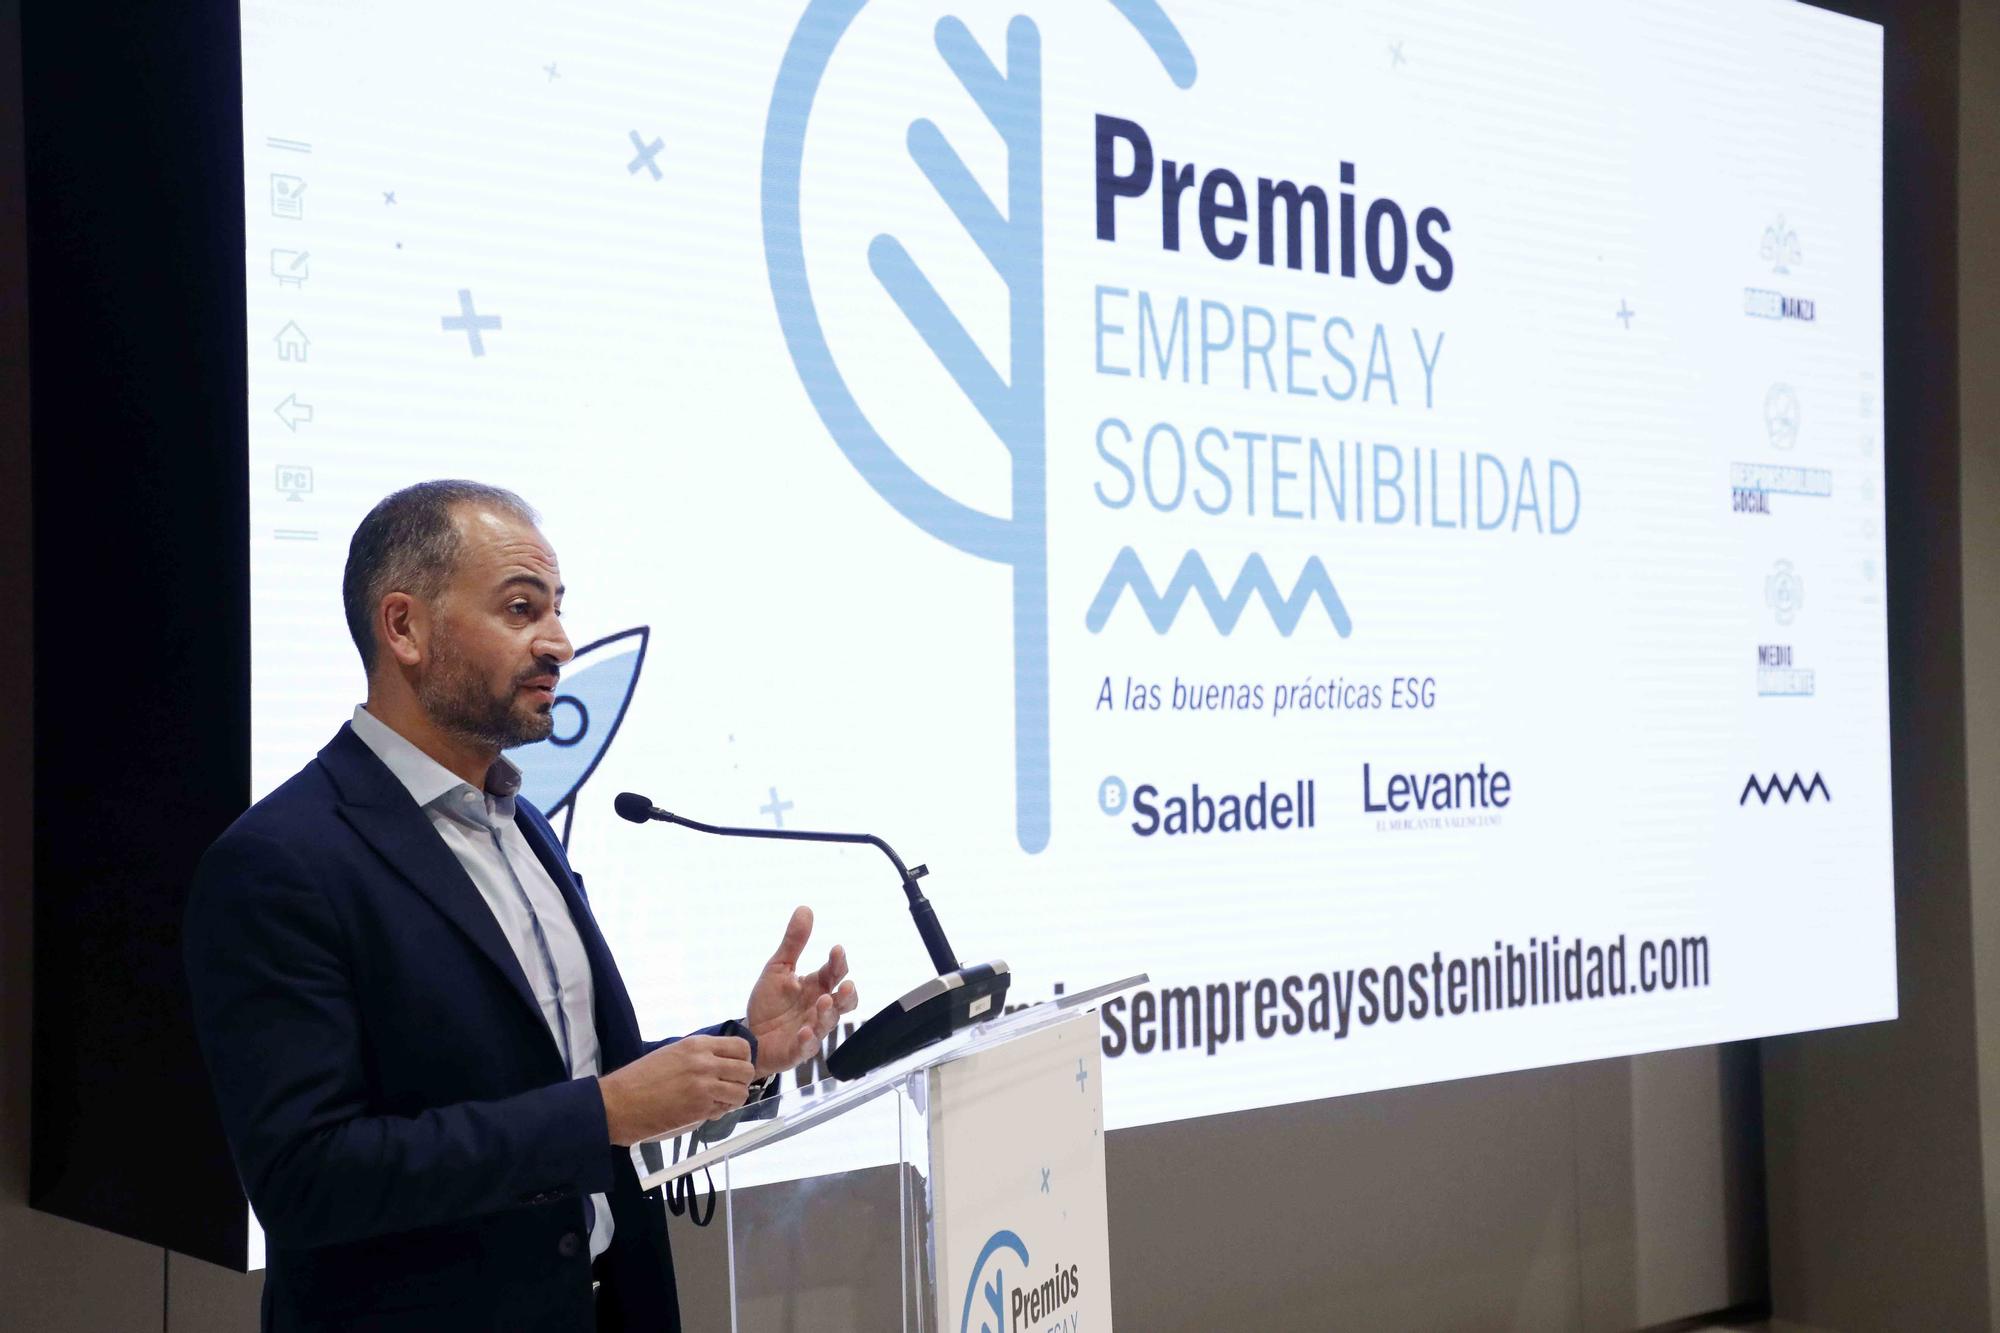 Premios Empresa y Sostenibilidad Sabadell